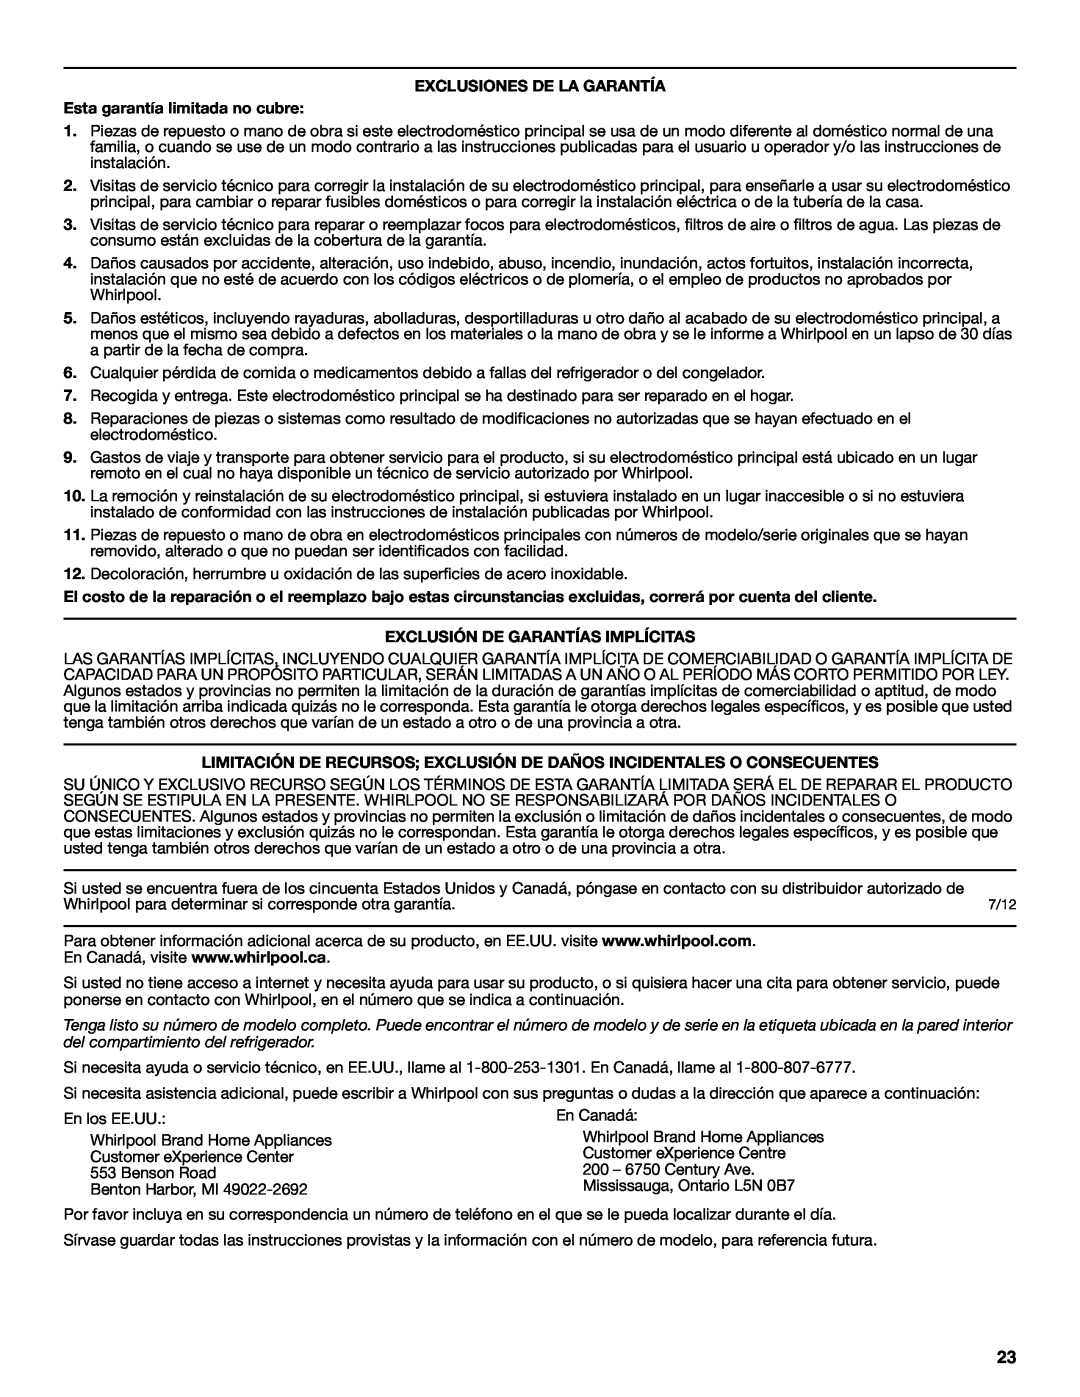 Whirlpool WRS325FNAM EXCLUSIONES DE LA GARANTÍA Esta garantía limitada no cubre, Exclusión De Garantías Implícitas 